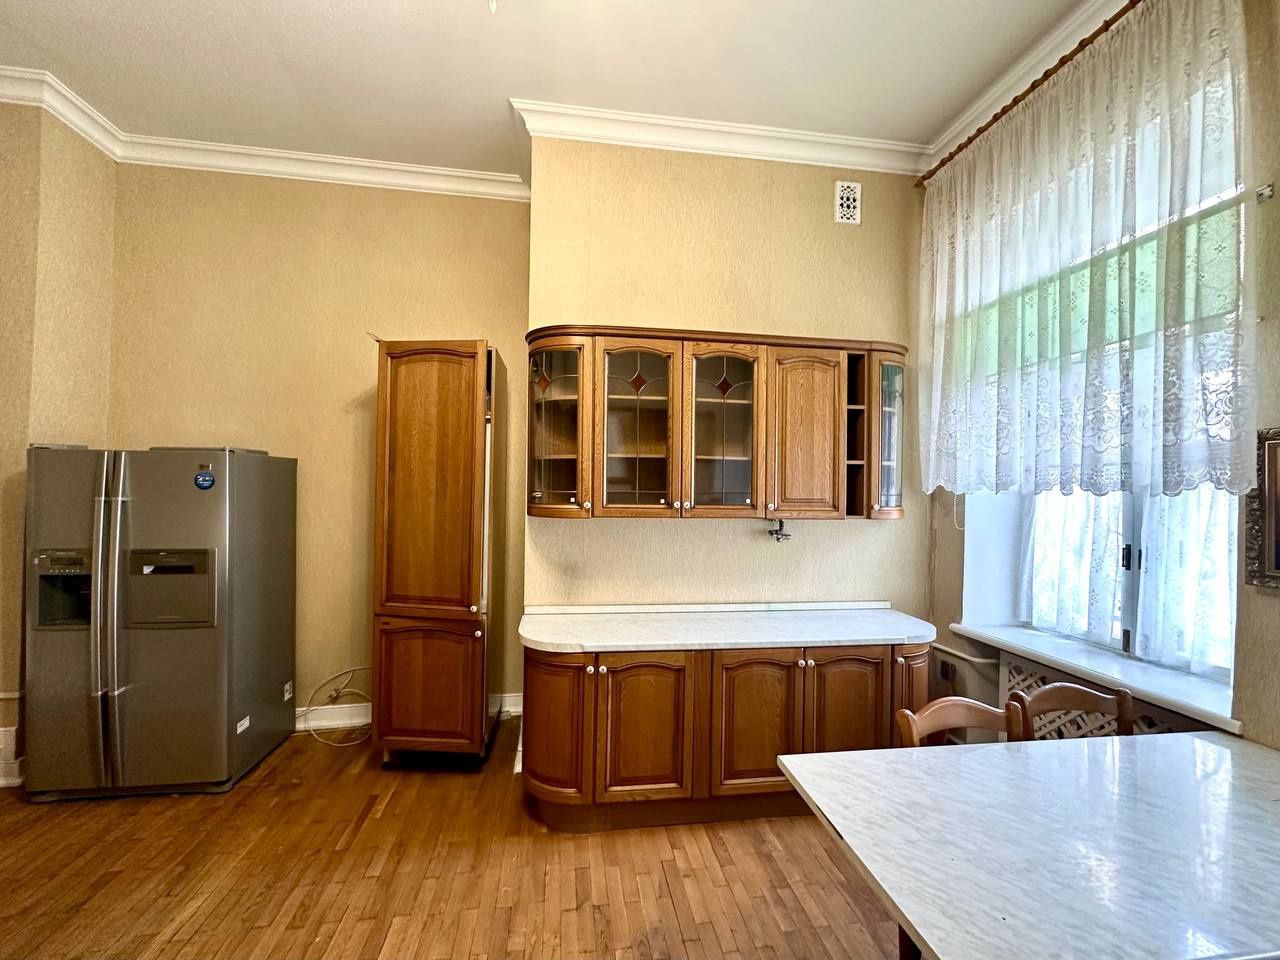 Продам квартиру на ул.Тургеневская S-125 m2,Клубный дом 1917 года